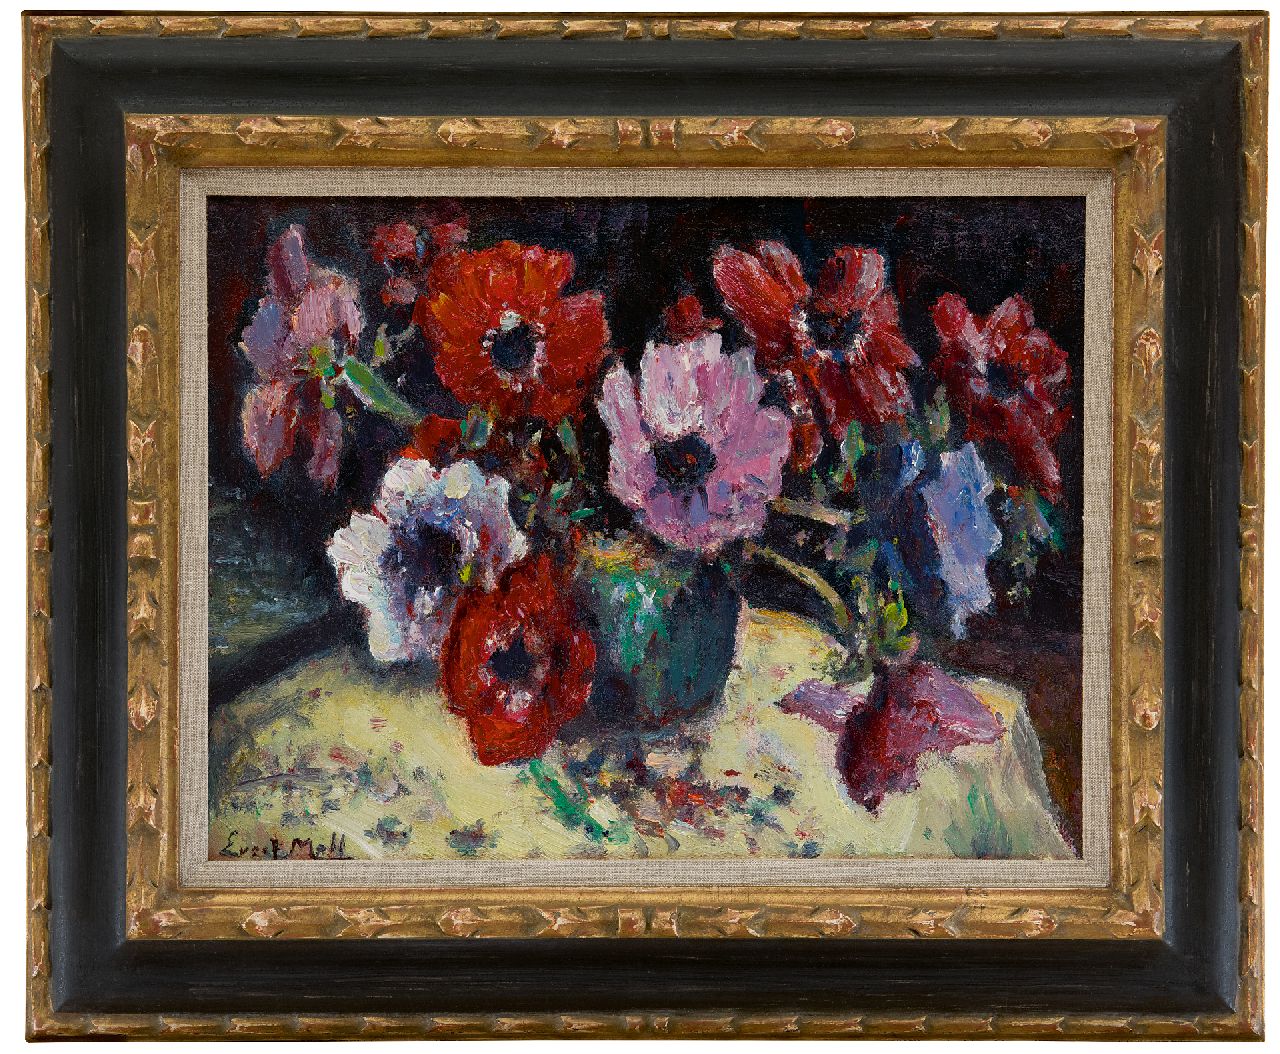 Moll E.  | Evert Moll | Schilderijen te koop aangeboden | Anemonen, olieverf op doek 30,5 x 40,1 cm, gesigneerd linksonder